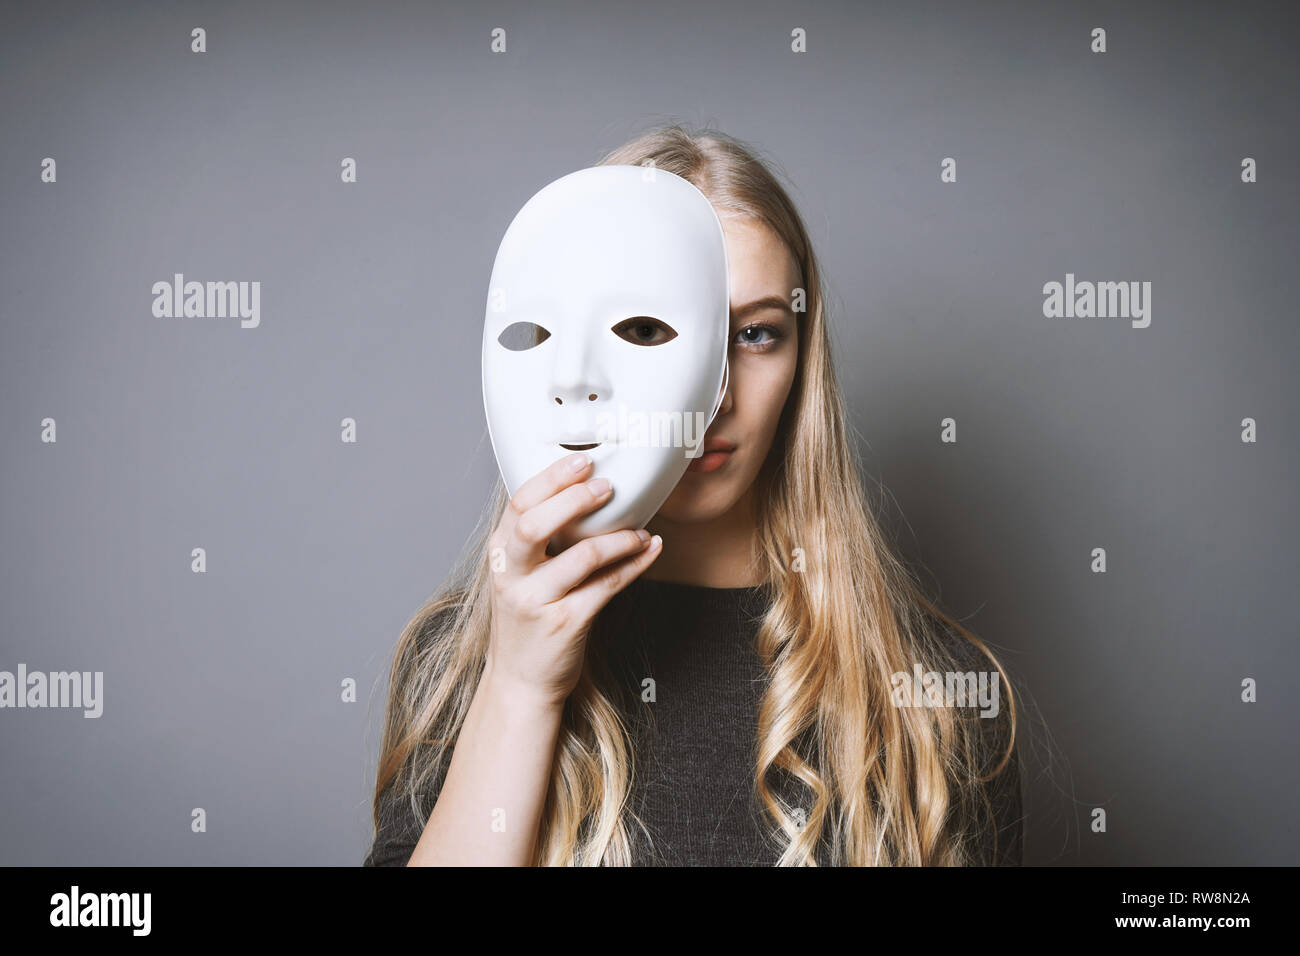 jeune fille se cachant le visage derrière le masque Banque D'Images